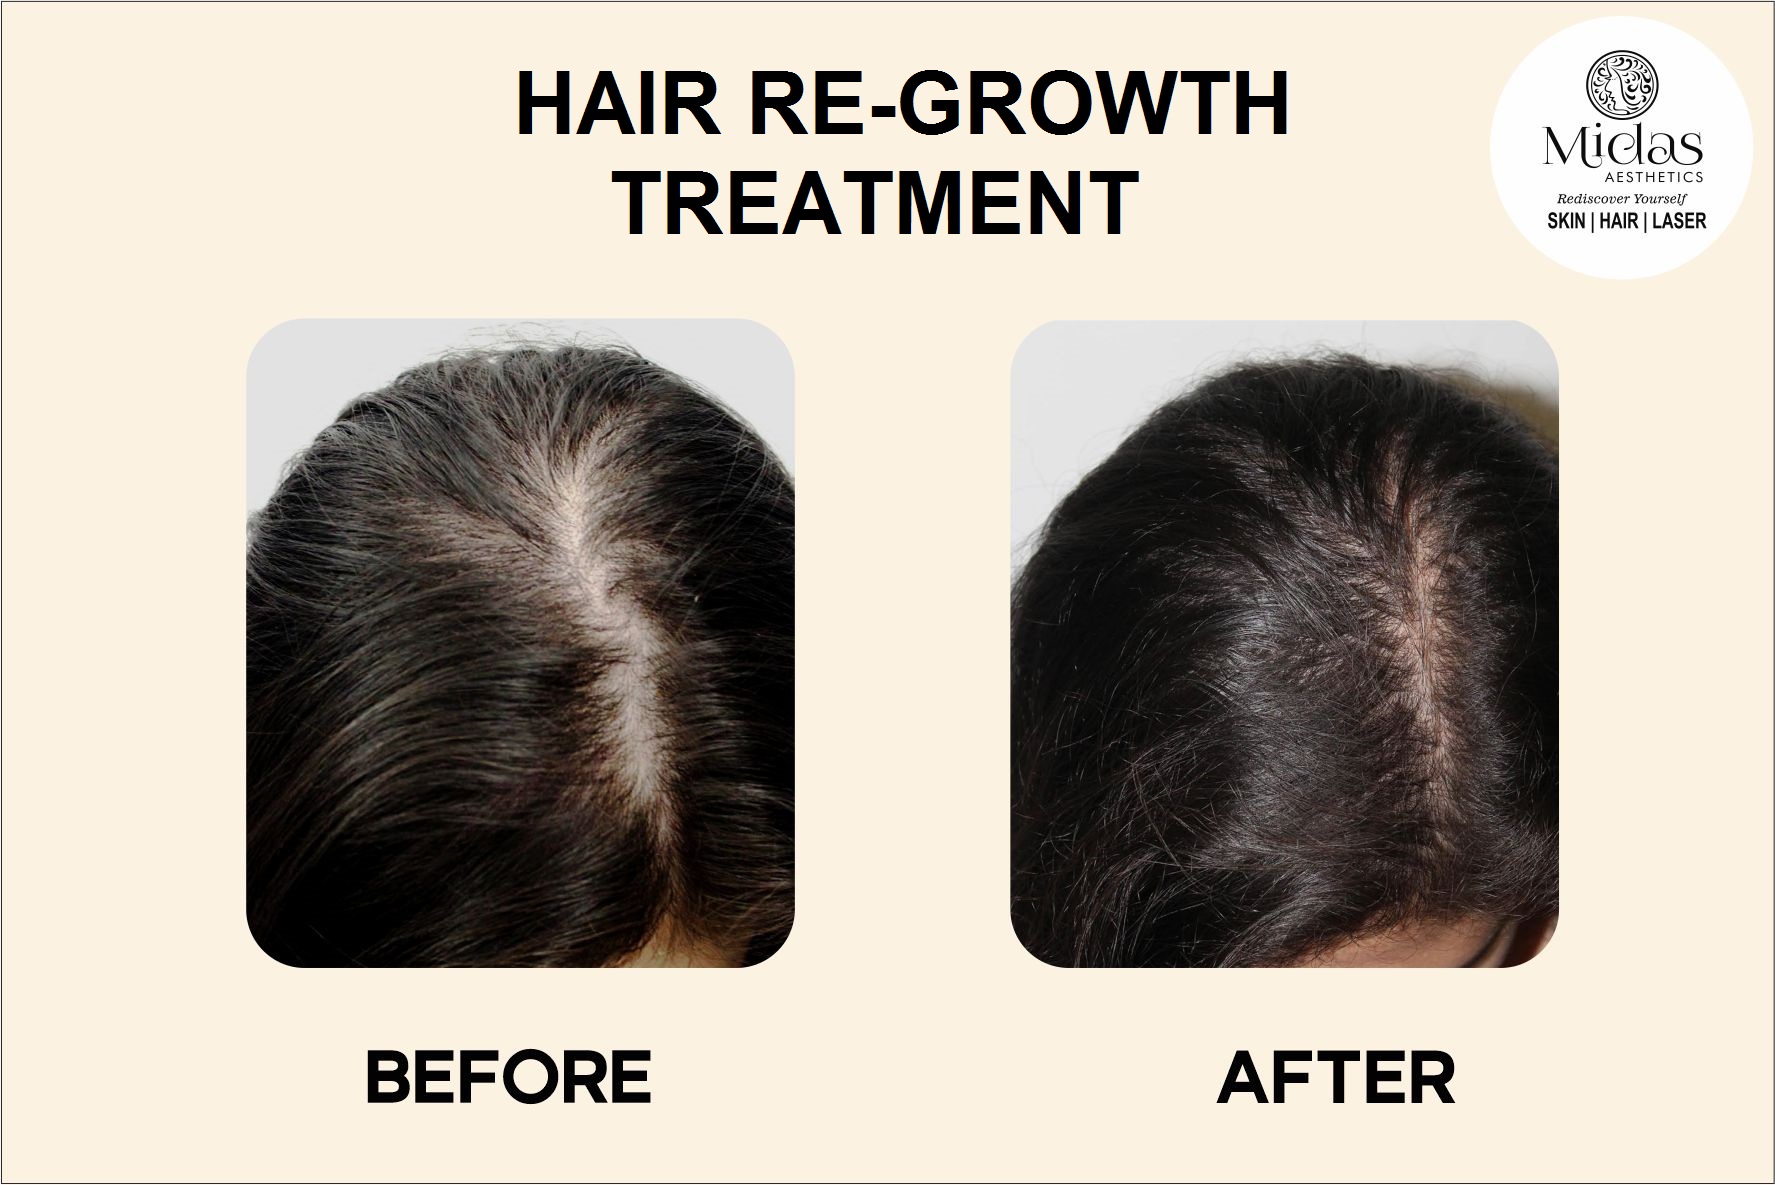 HAIR Re-growth treatment